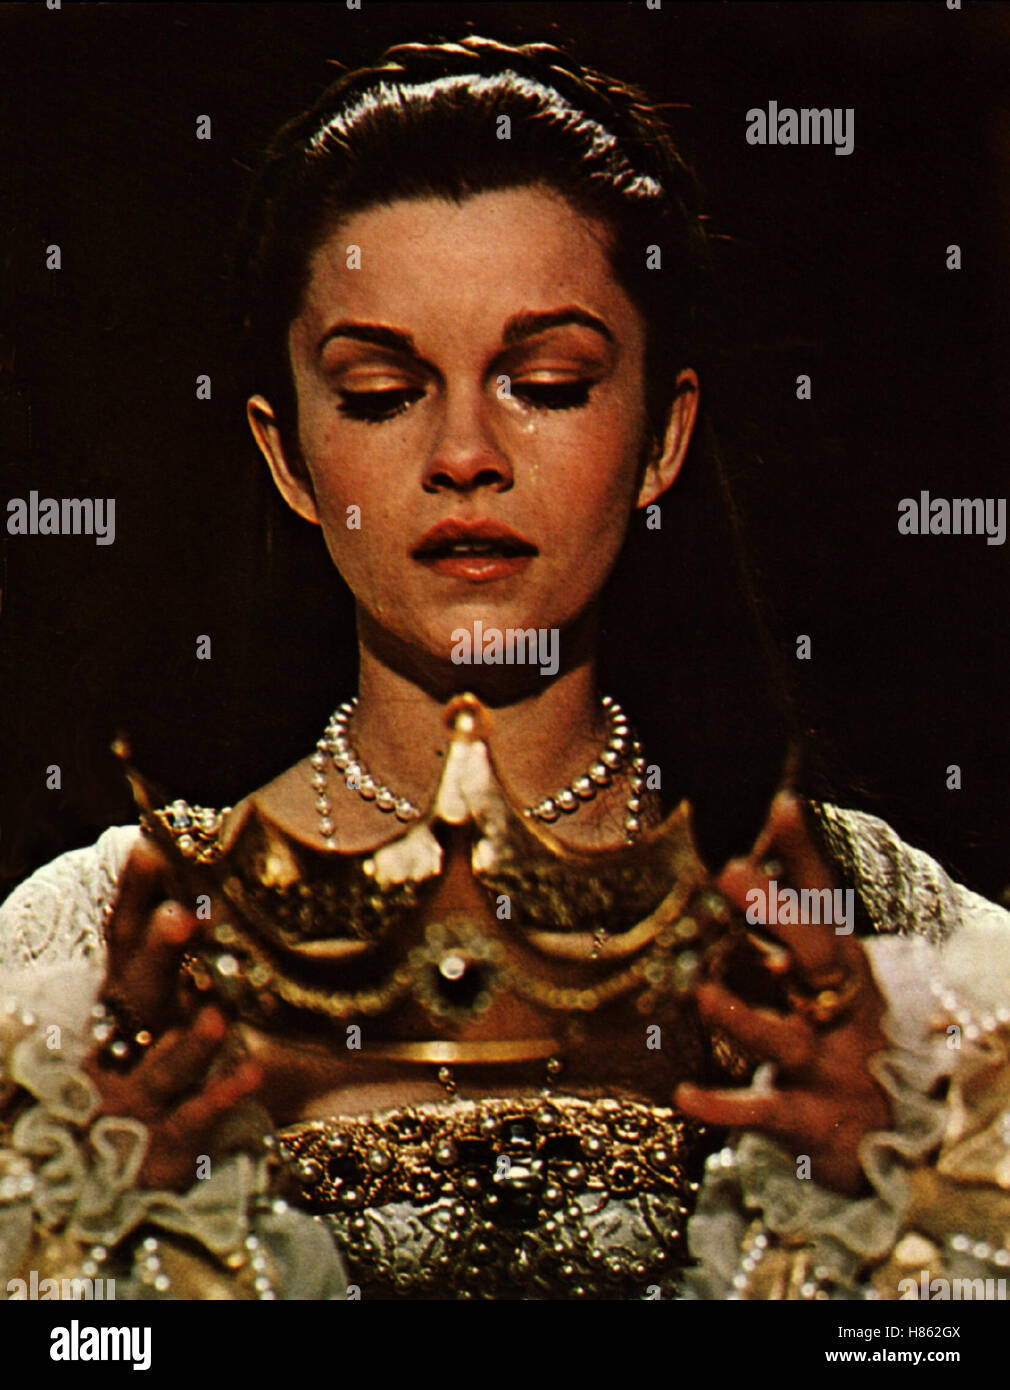 Königin für 1000 Tage, (ANNE OF THE THOUSAND DAYS) USA 1969, Regie: Charles Jarrott, GENEVIEVE BUJOLD Stichwort: Krone Stock Photo